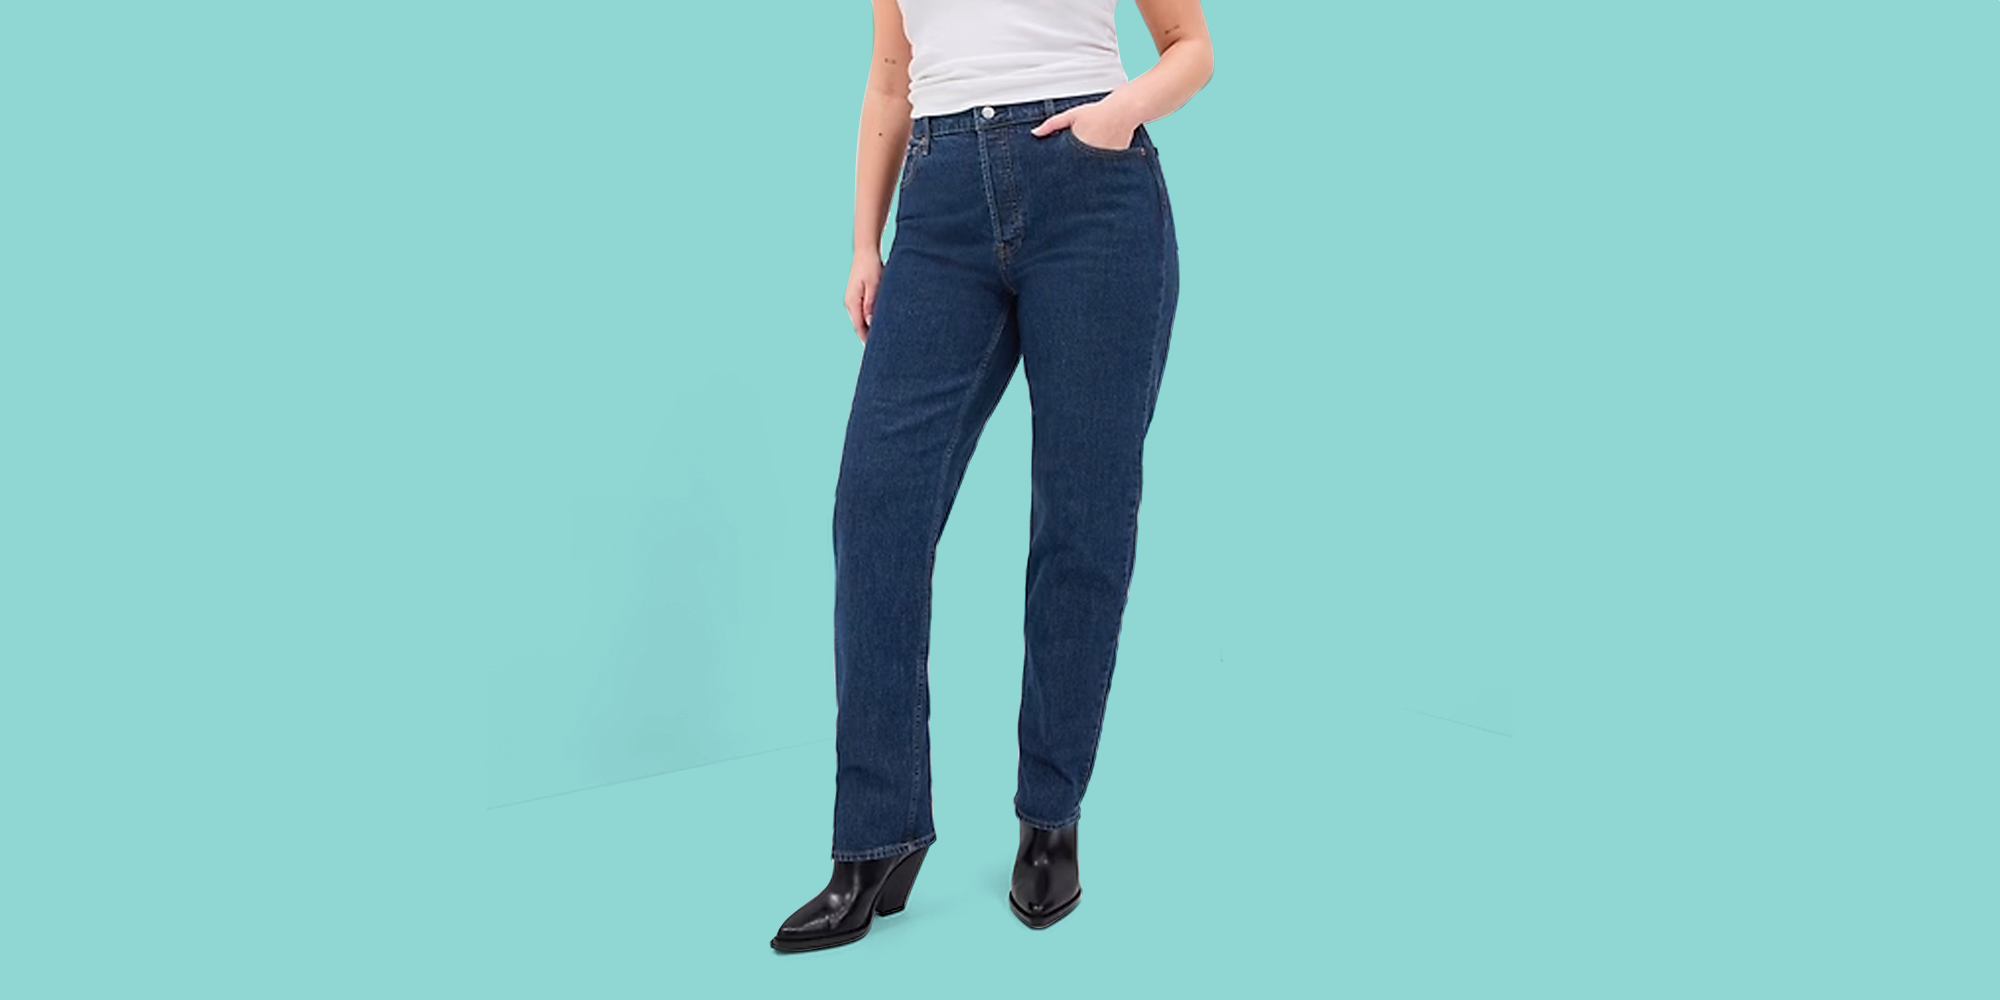 Best Petite Jeans For Women: Wide Leg & High Waist